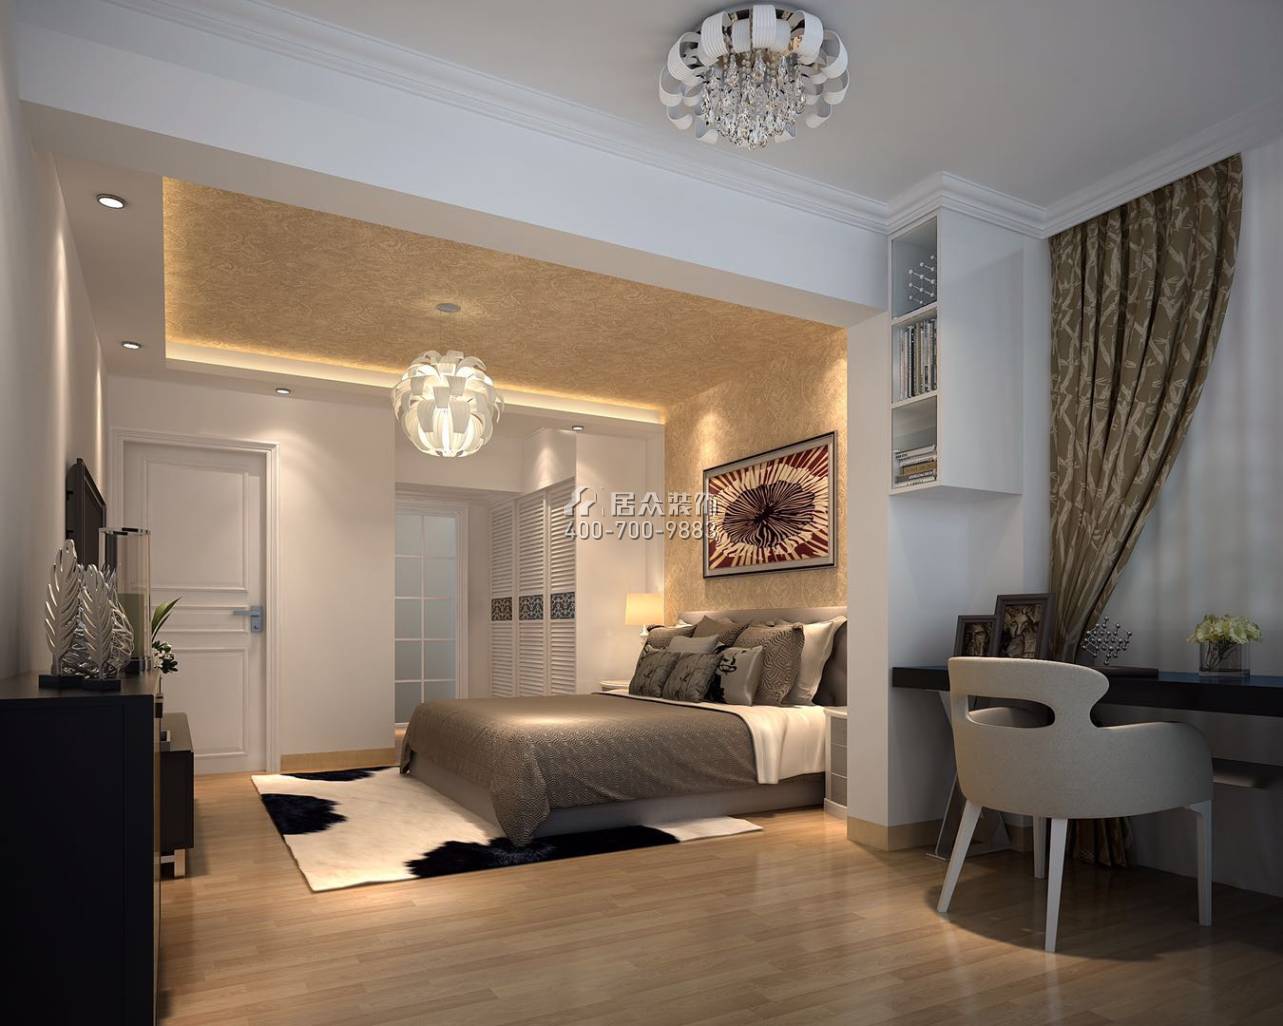 华业玫瑰四季89平方米欧式风格平层户型卧室装修效果图